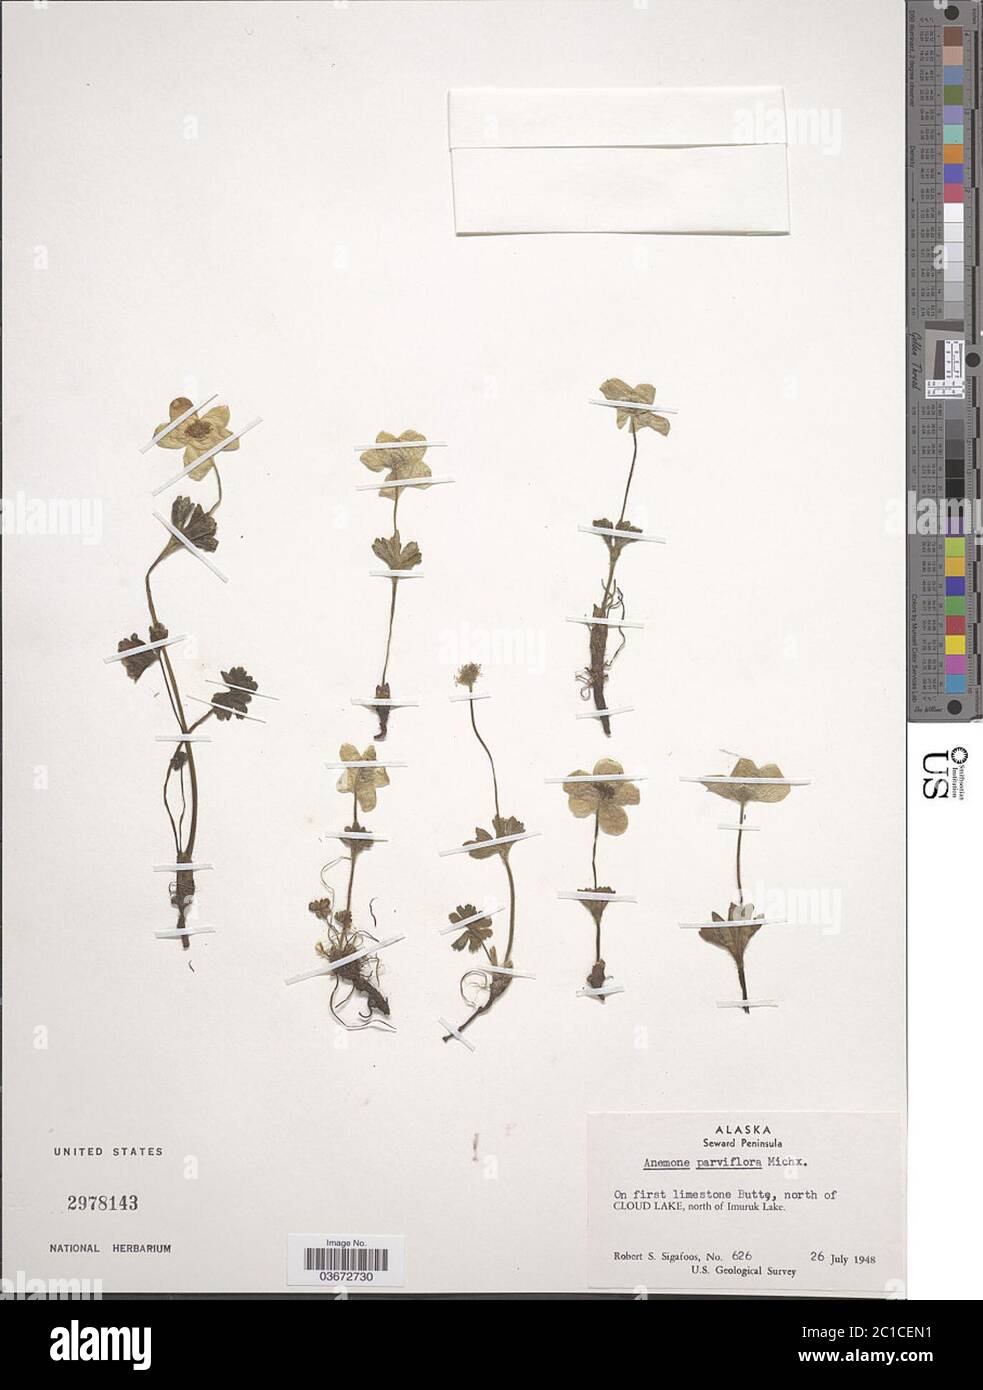 Anemone parviflora Michx Anemone parviflora Michx. Stock Photo